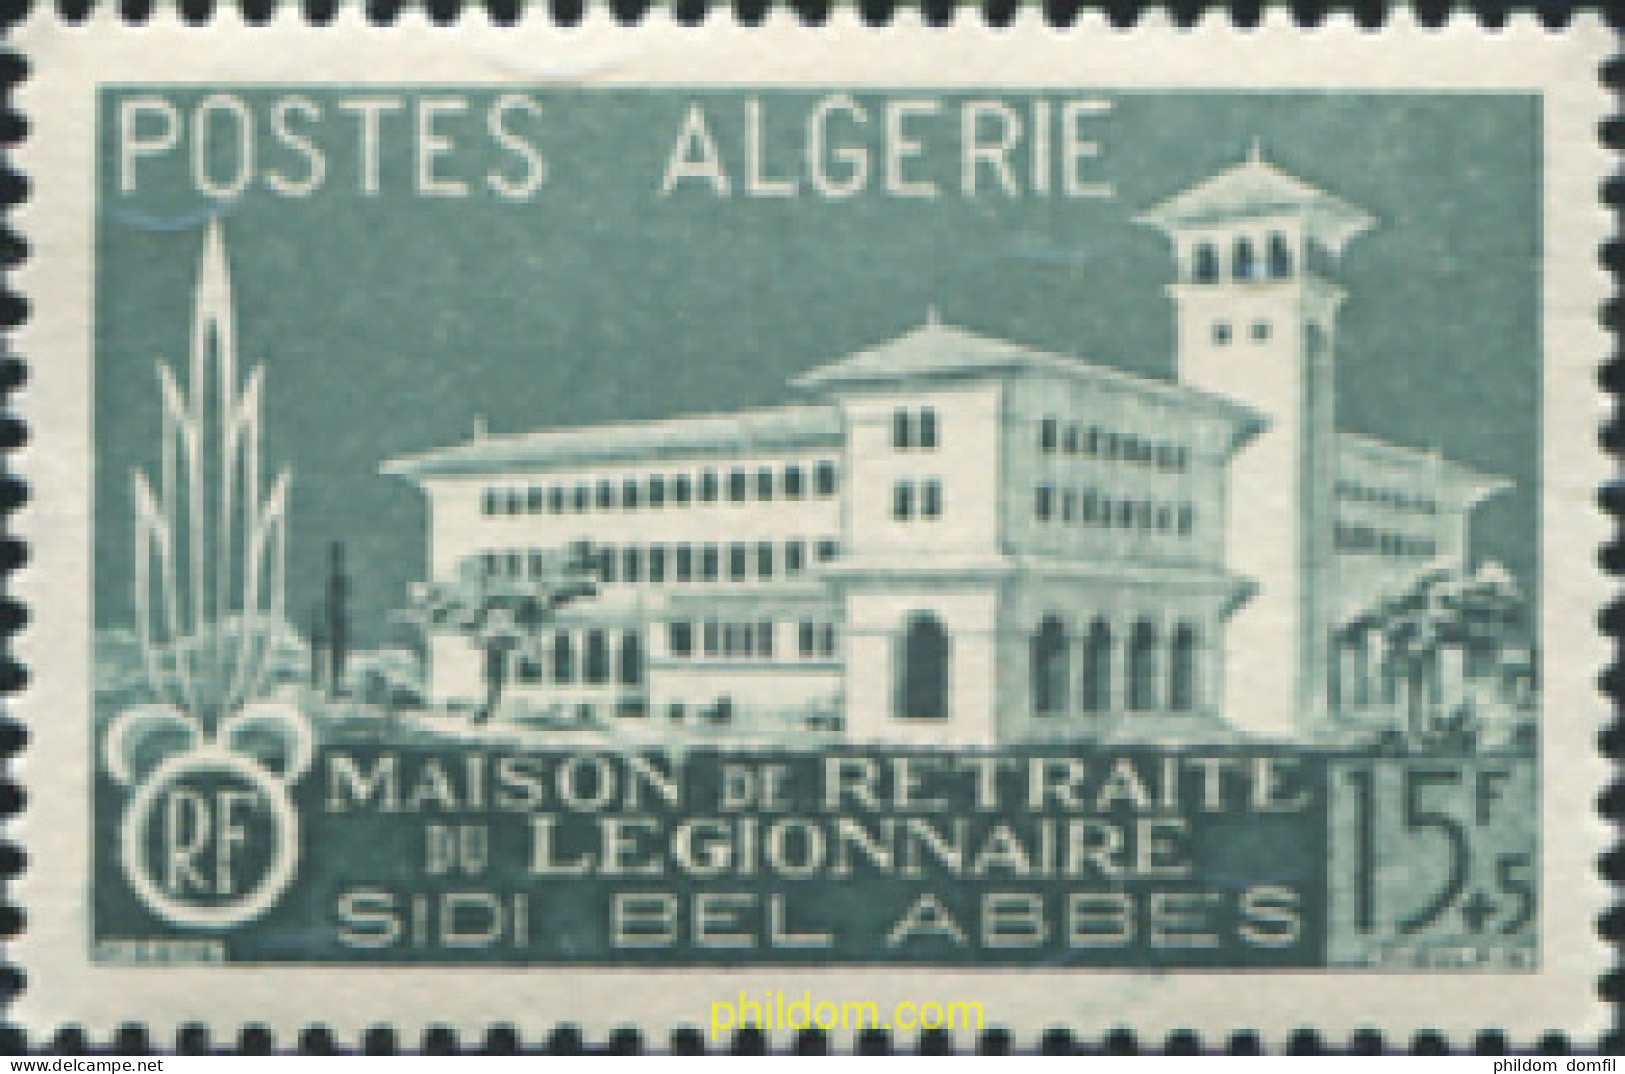 724288 MNH ARGELIA 1956 EN BENEFICIO DE LAS OBRAS DE LA LEGIÓN EXTRANJERA - Algerije (1962-...)